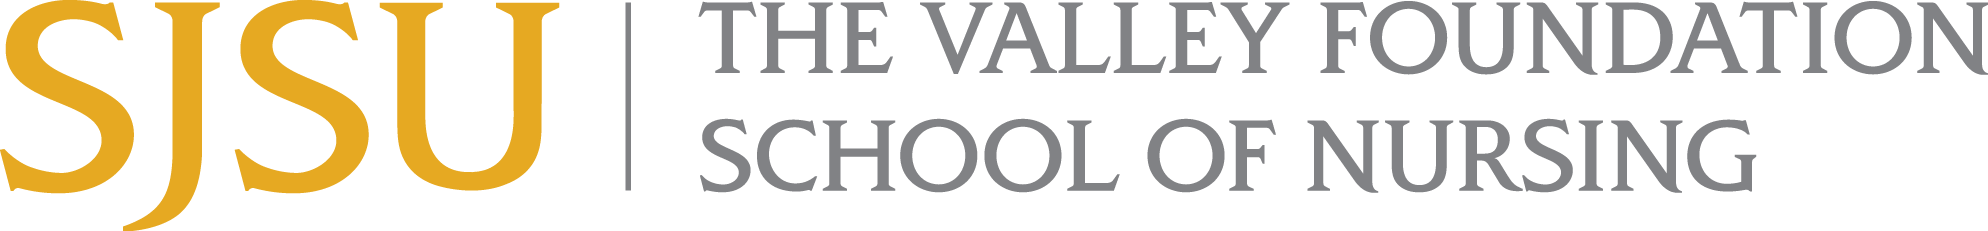 Valley Foundation School of Nursing